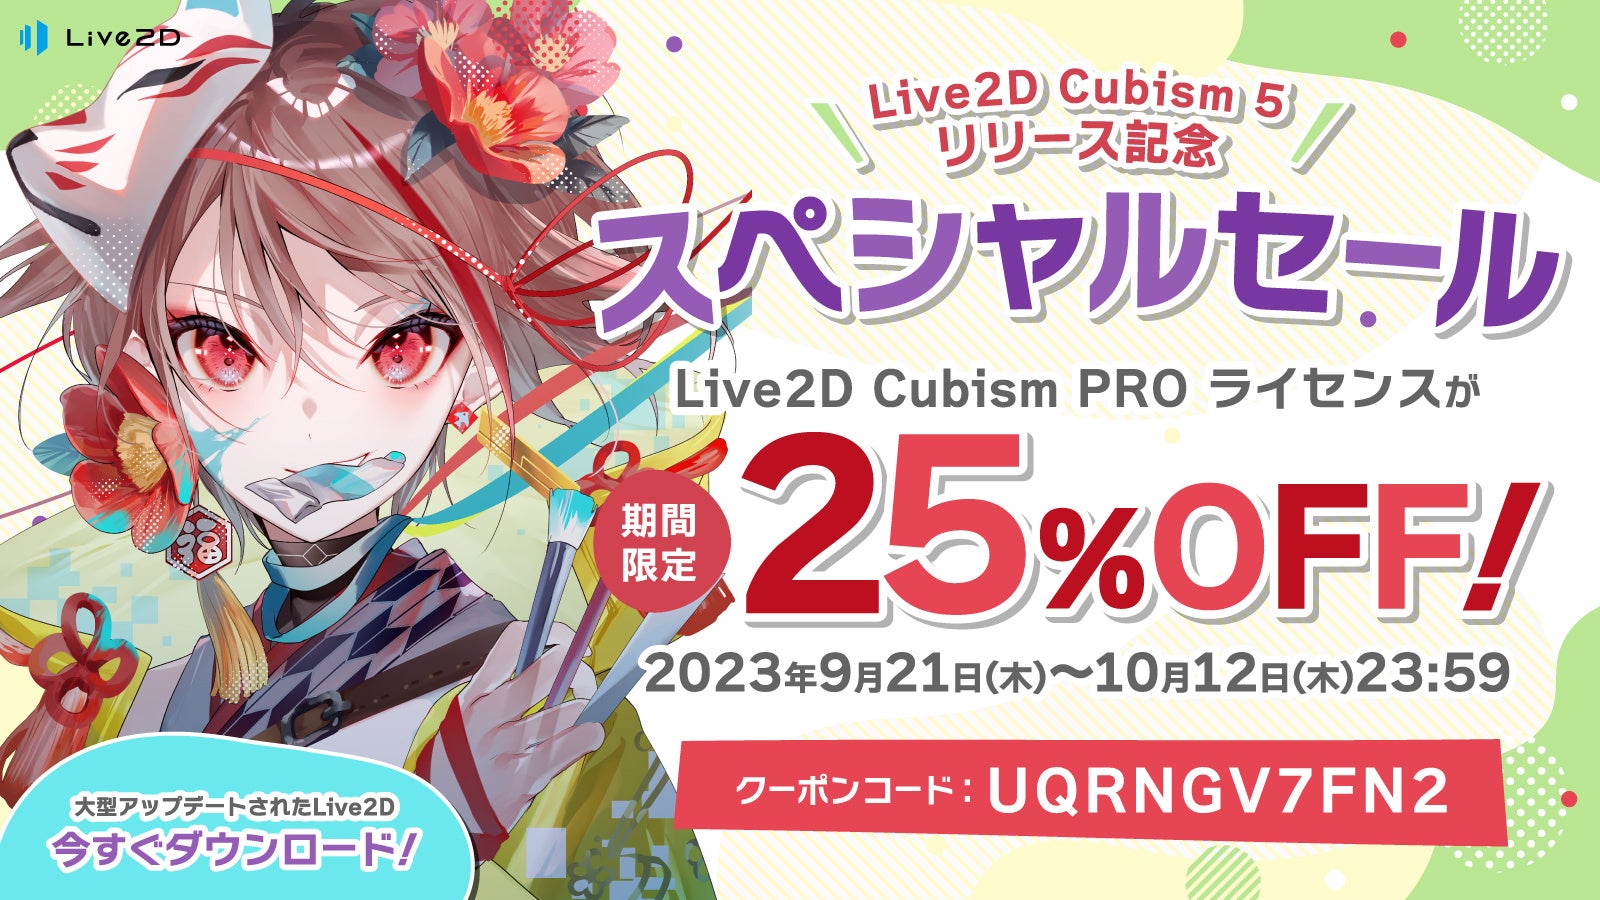 Live2D Cubism 5 リリース！PROライセンスが25%OFFで買える記念セール開催！その他連動キャンペーンもあり